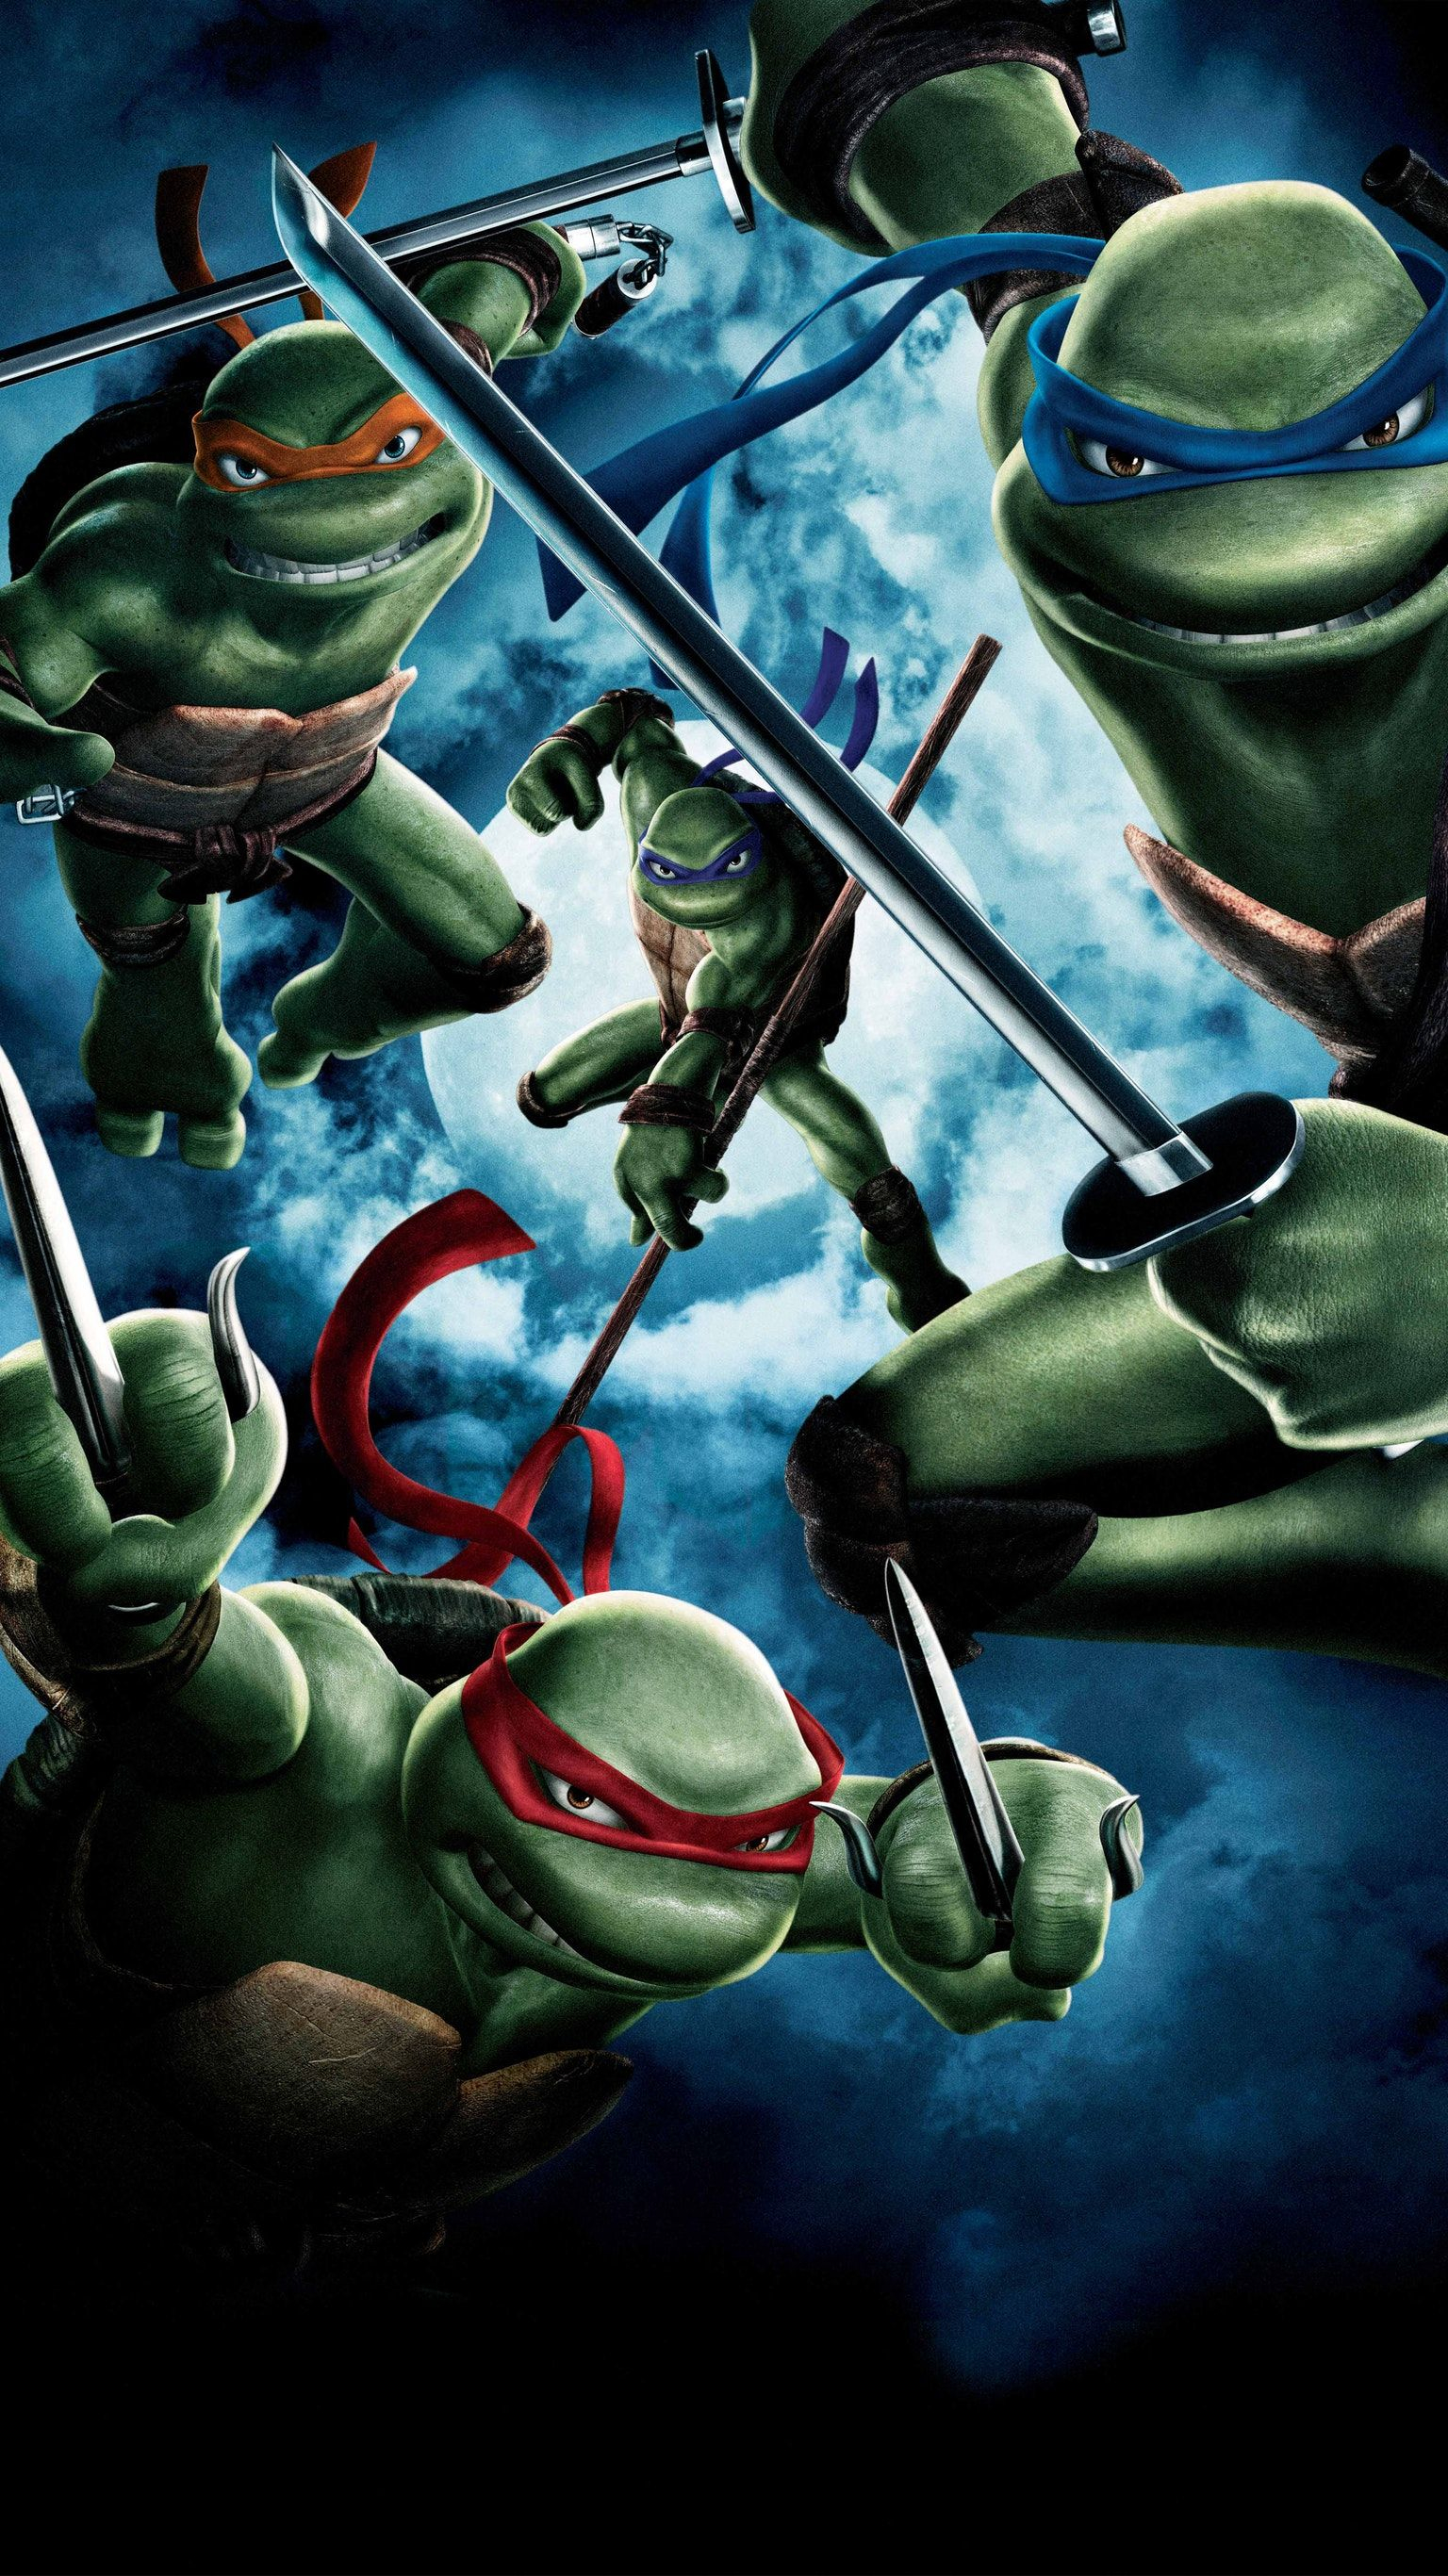 1536x2733 TMNT (2007) Phone Wallpaper | Moviemania | Tmnt wallpaper, Tmnt, Teenage mutant ninja turtles movie